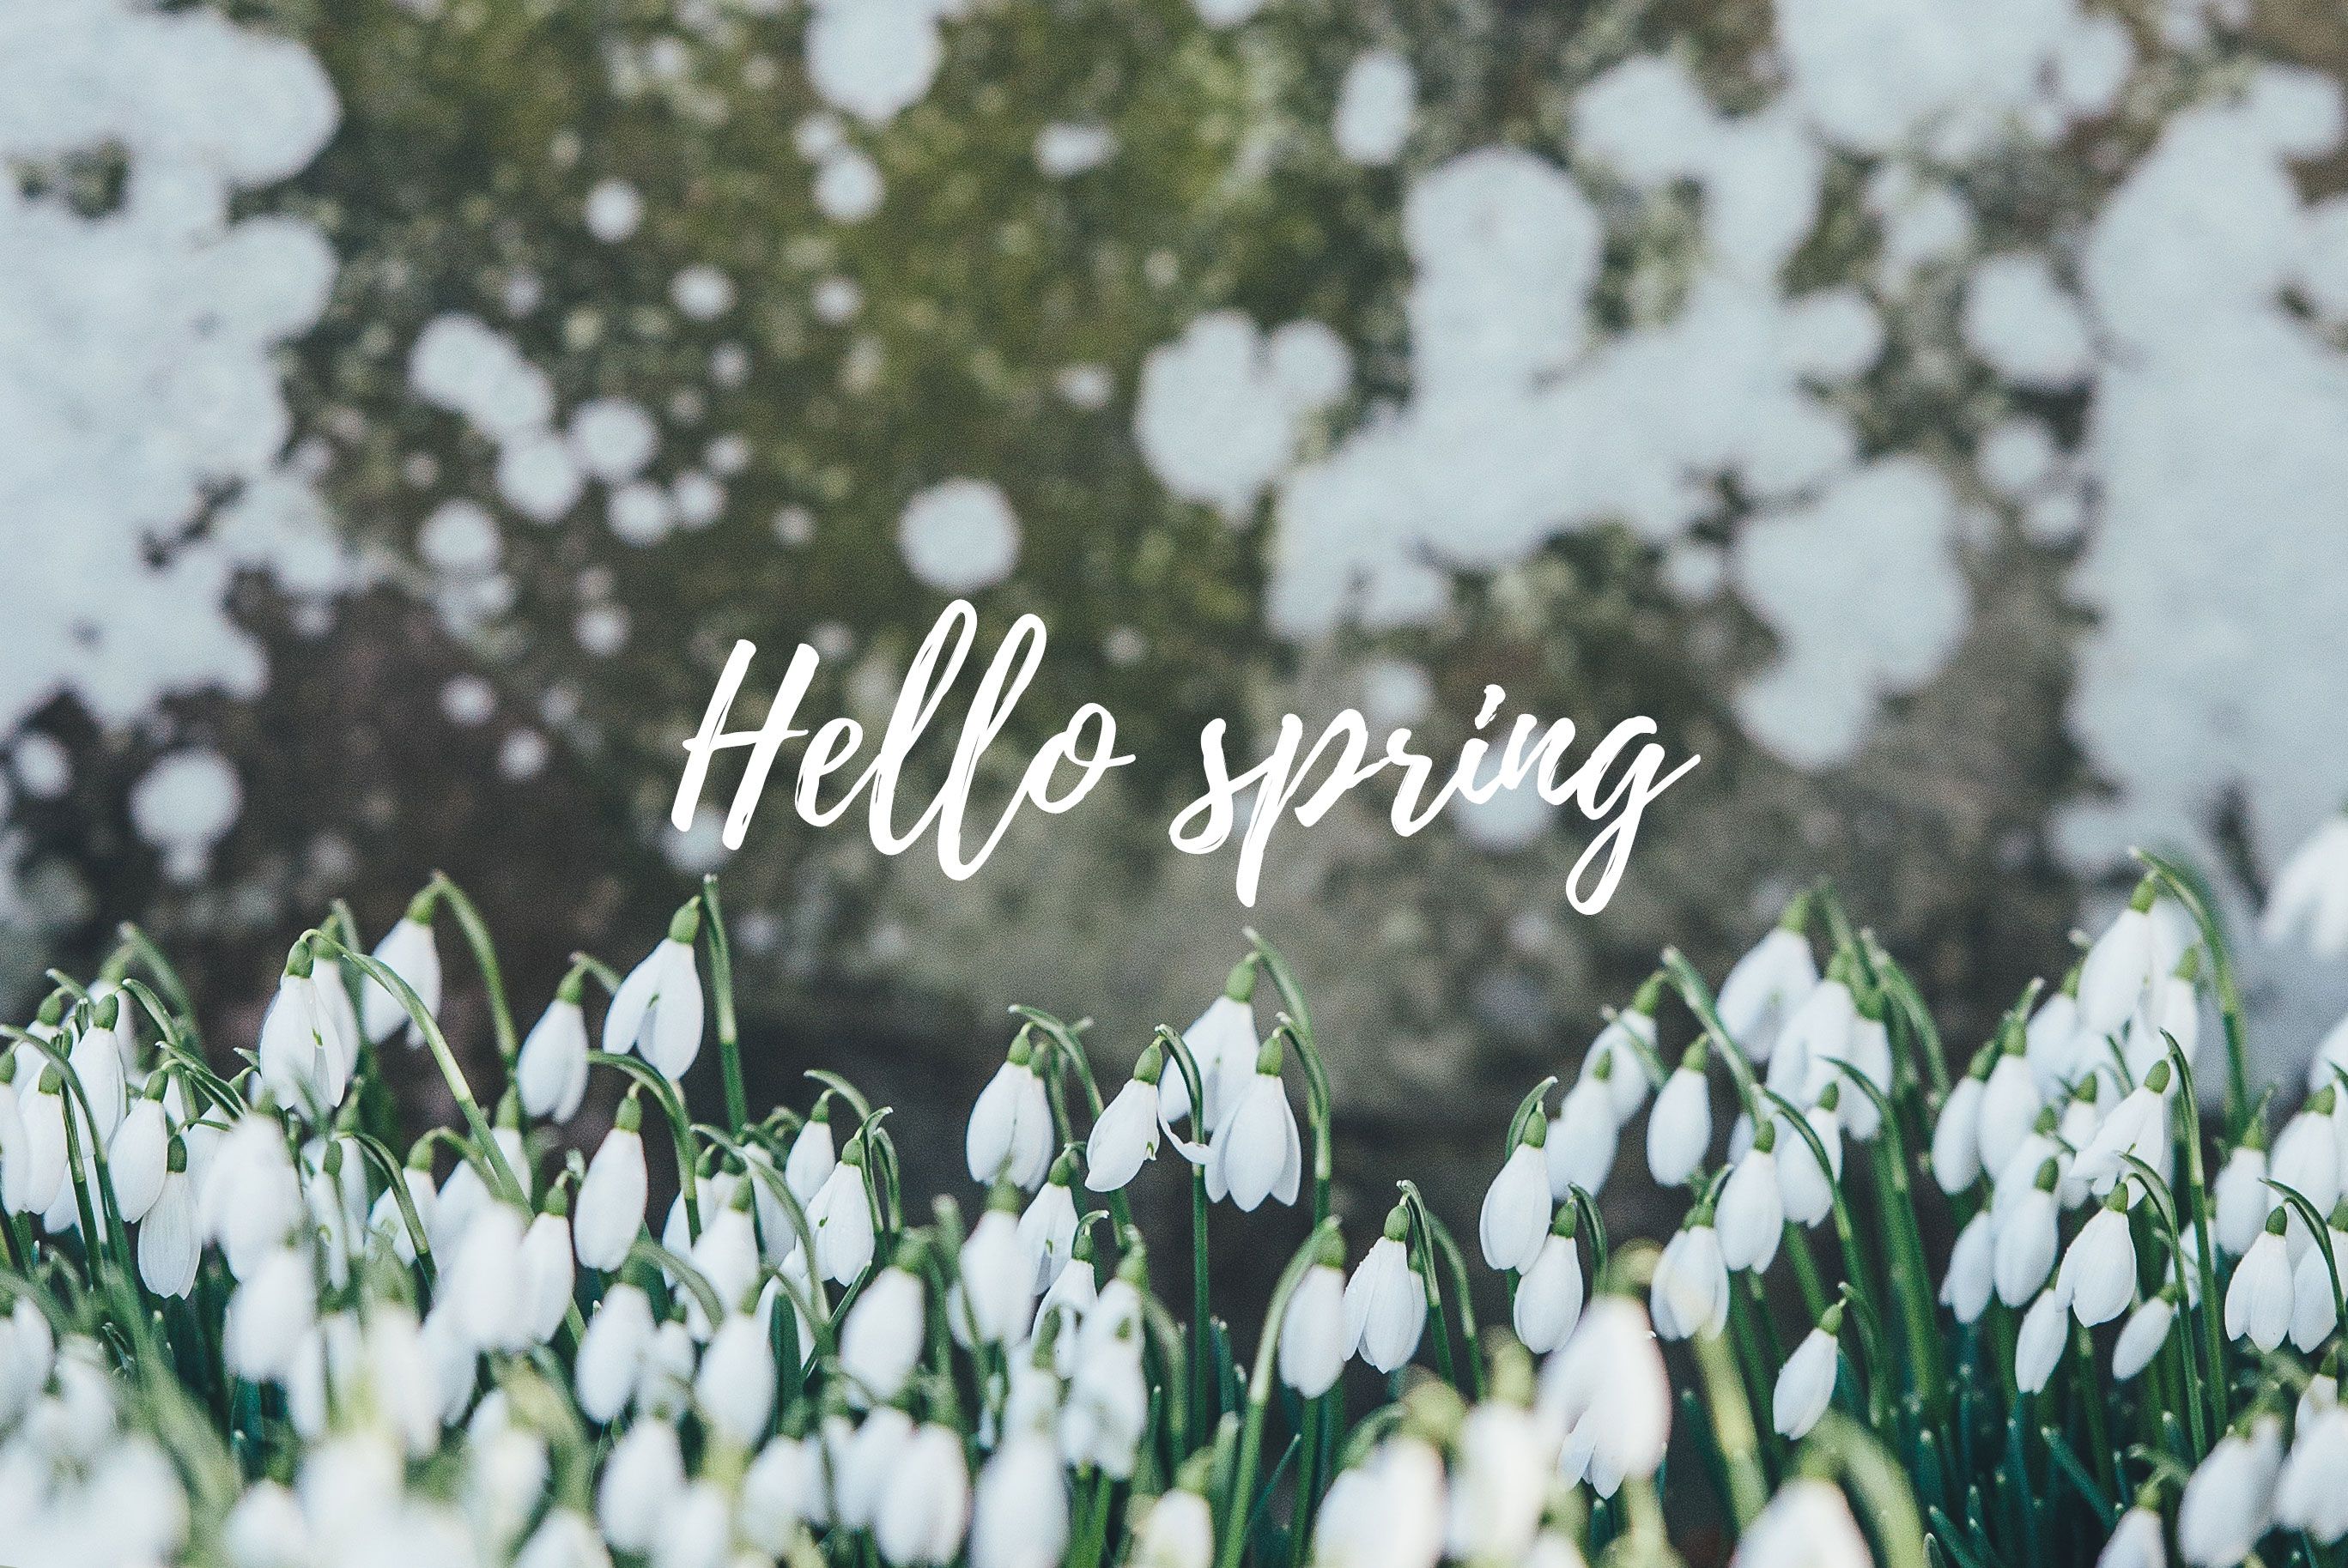 Free Spring Desktop Image. Sonrisa Studio. Spring wallpaper, Spring desktop wallpaper, Hello spring wallpaper